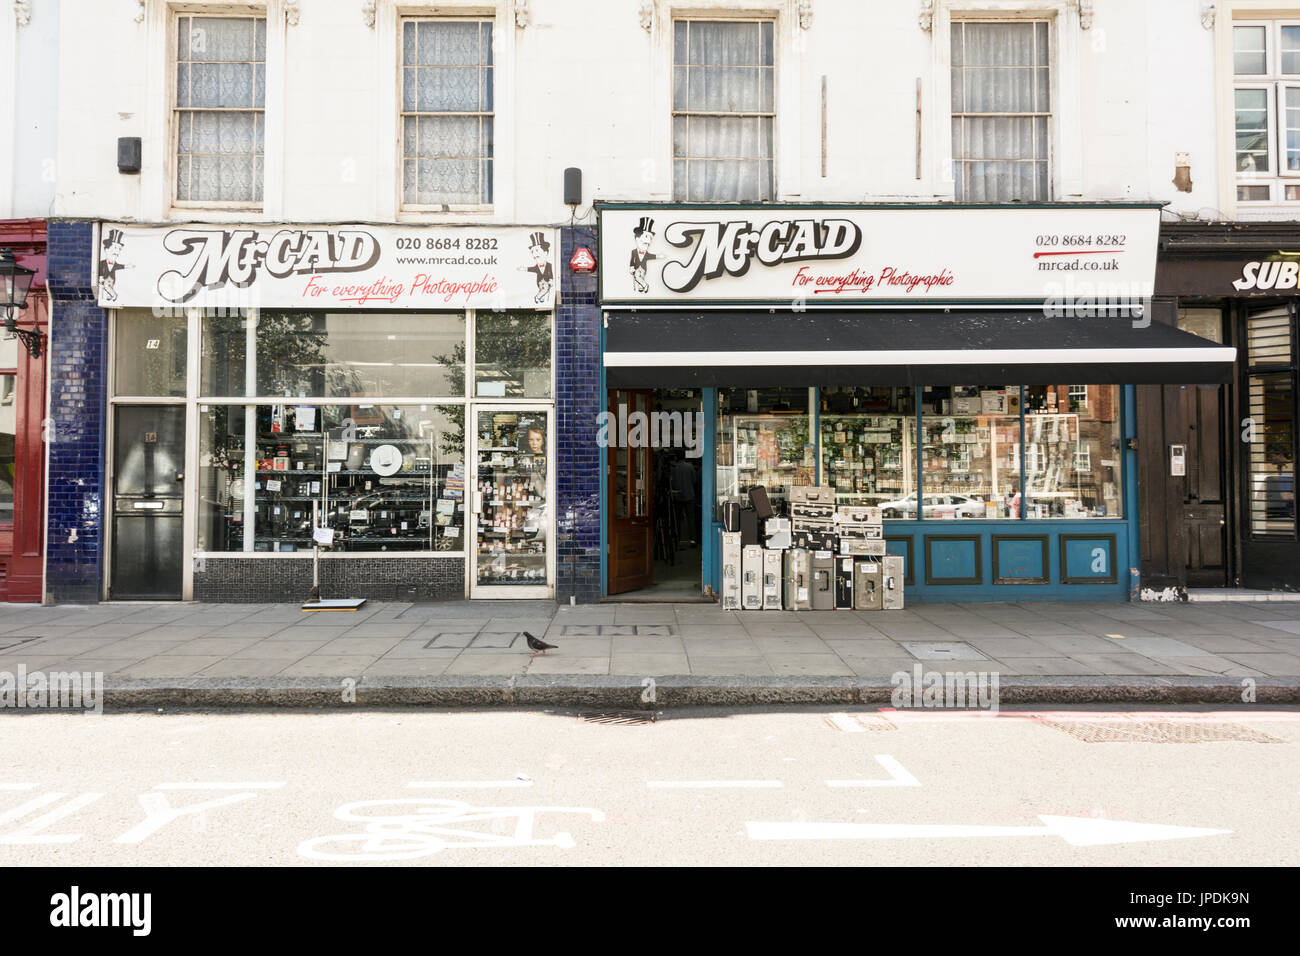 Monsieur Cad sur le photographique Tachbrook Street, Pimlico, Londres, UK Banque D'Images